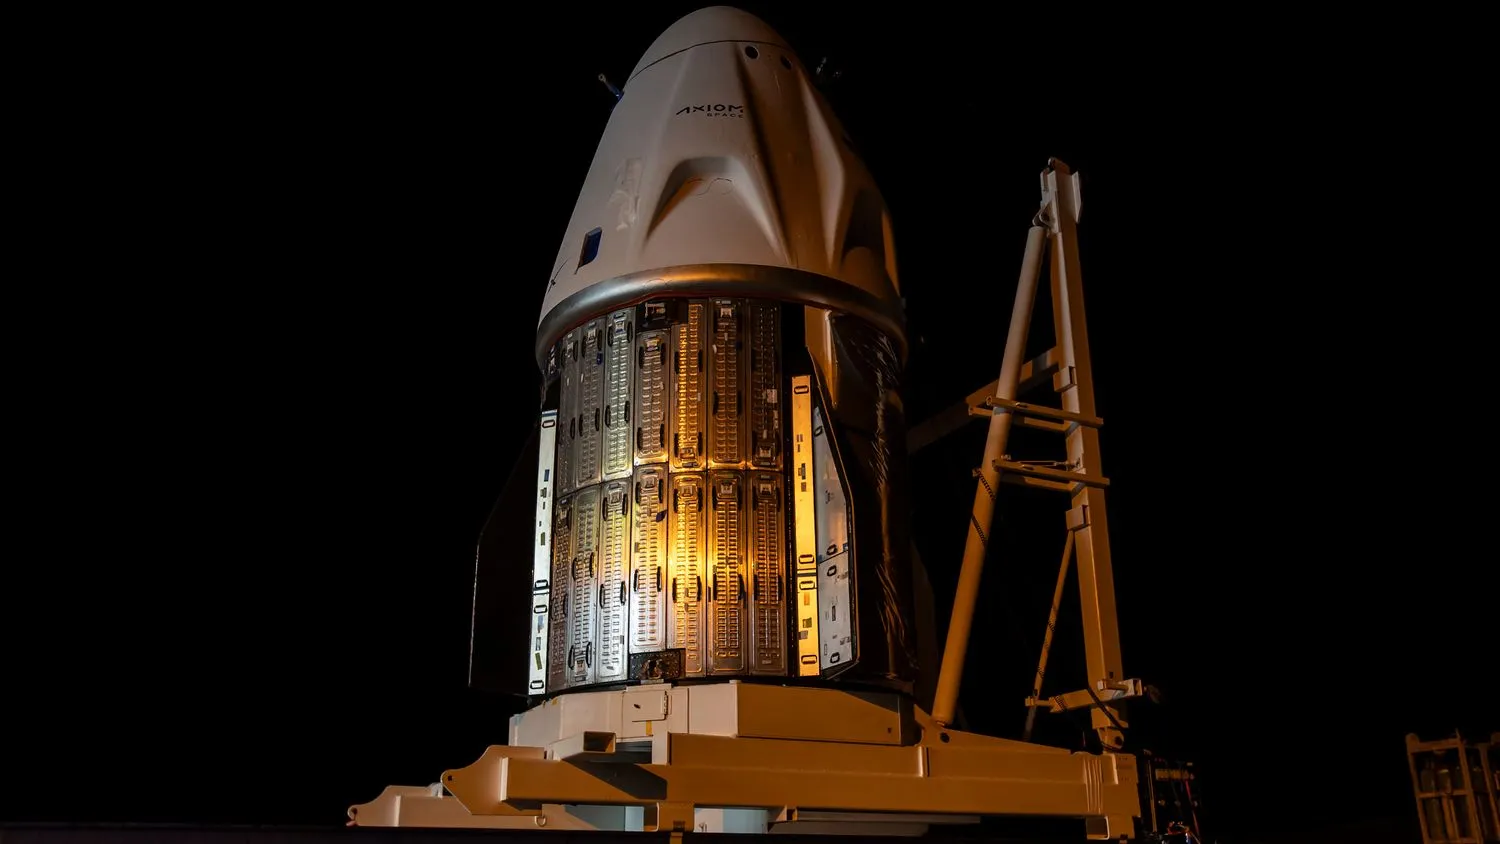 eine weiße SpaceX-Kapsel ist in einem großen, dunklen Raum zu sehen.